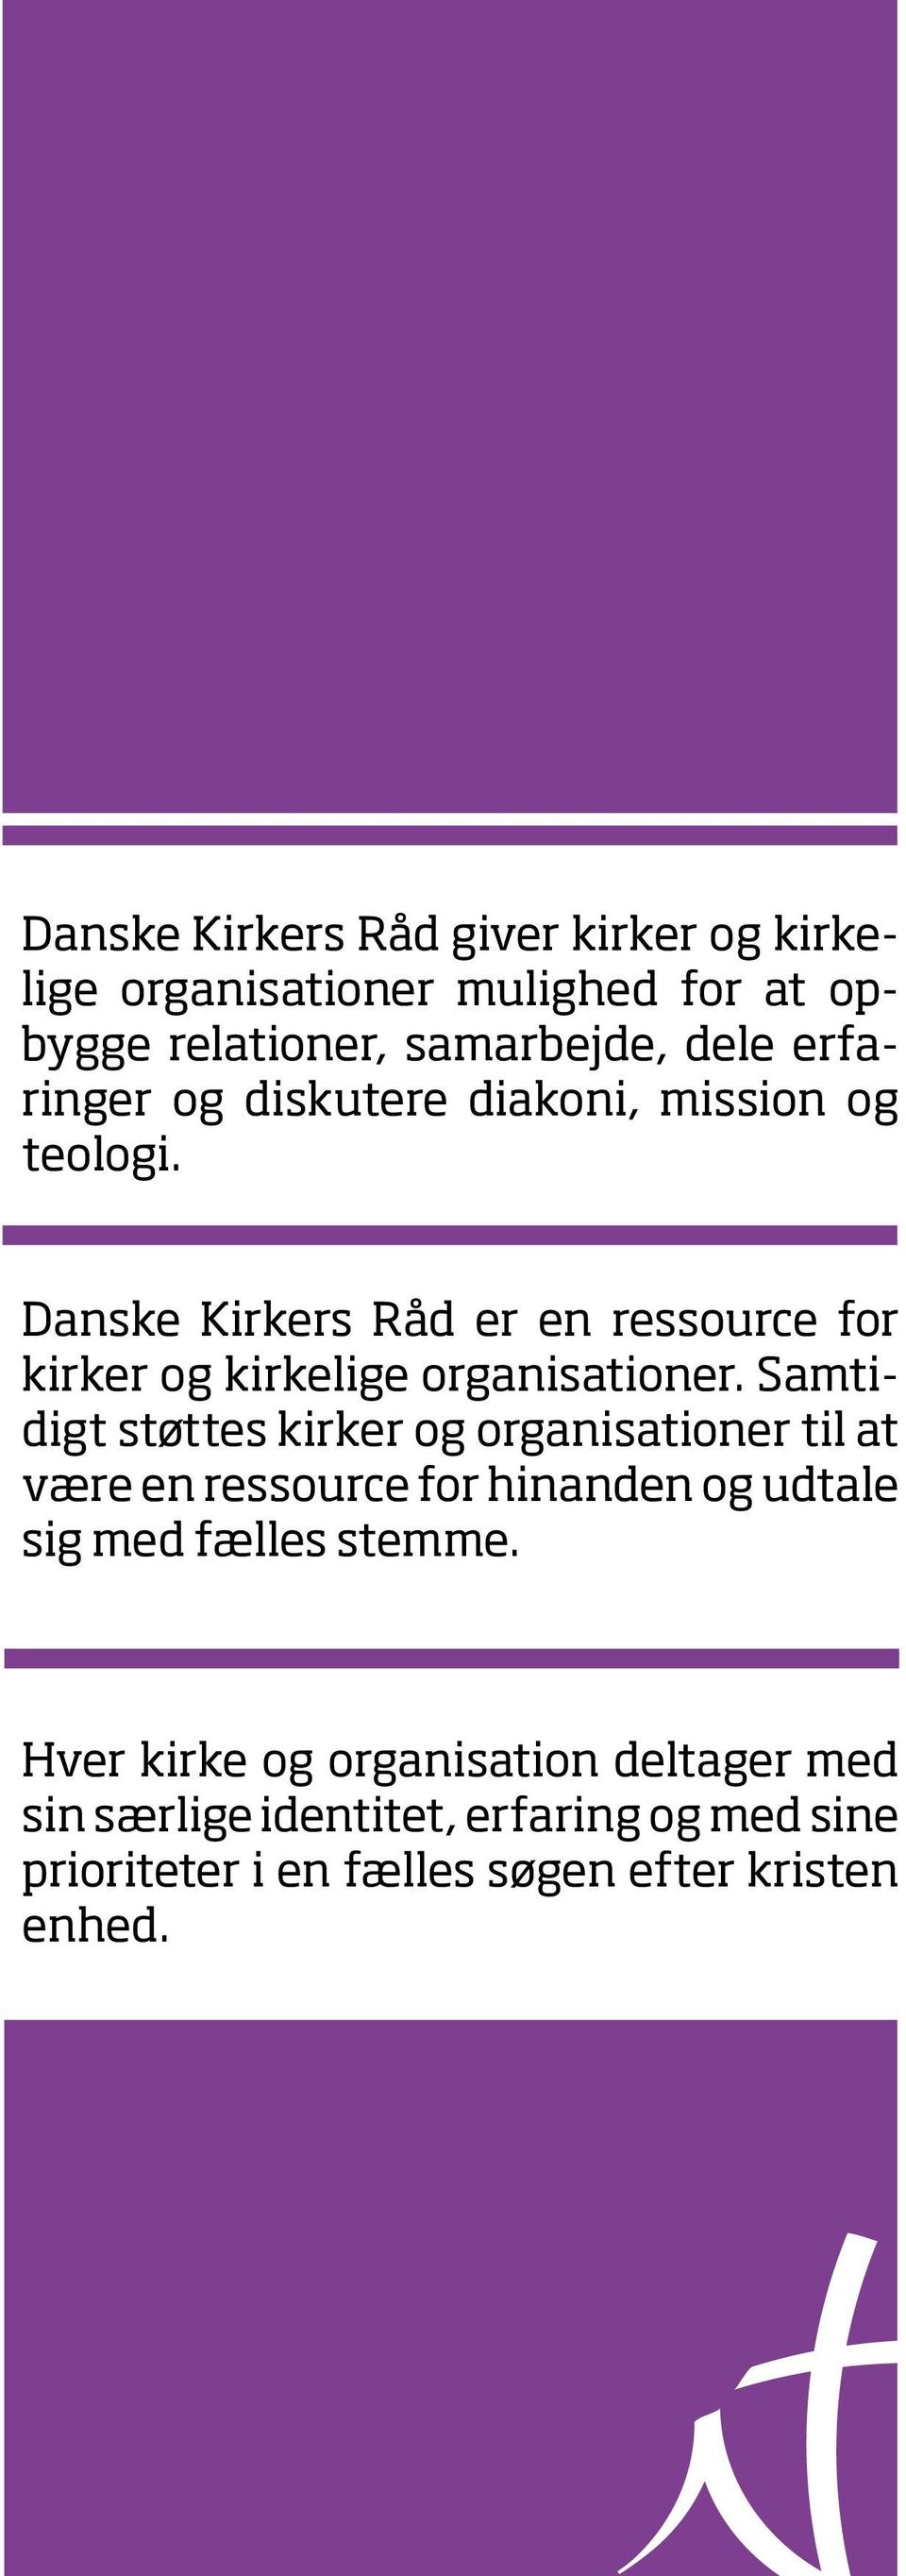 Danske Kirkers Råd er en ressource for kirker og kirkelige organisationer.